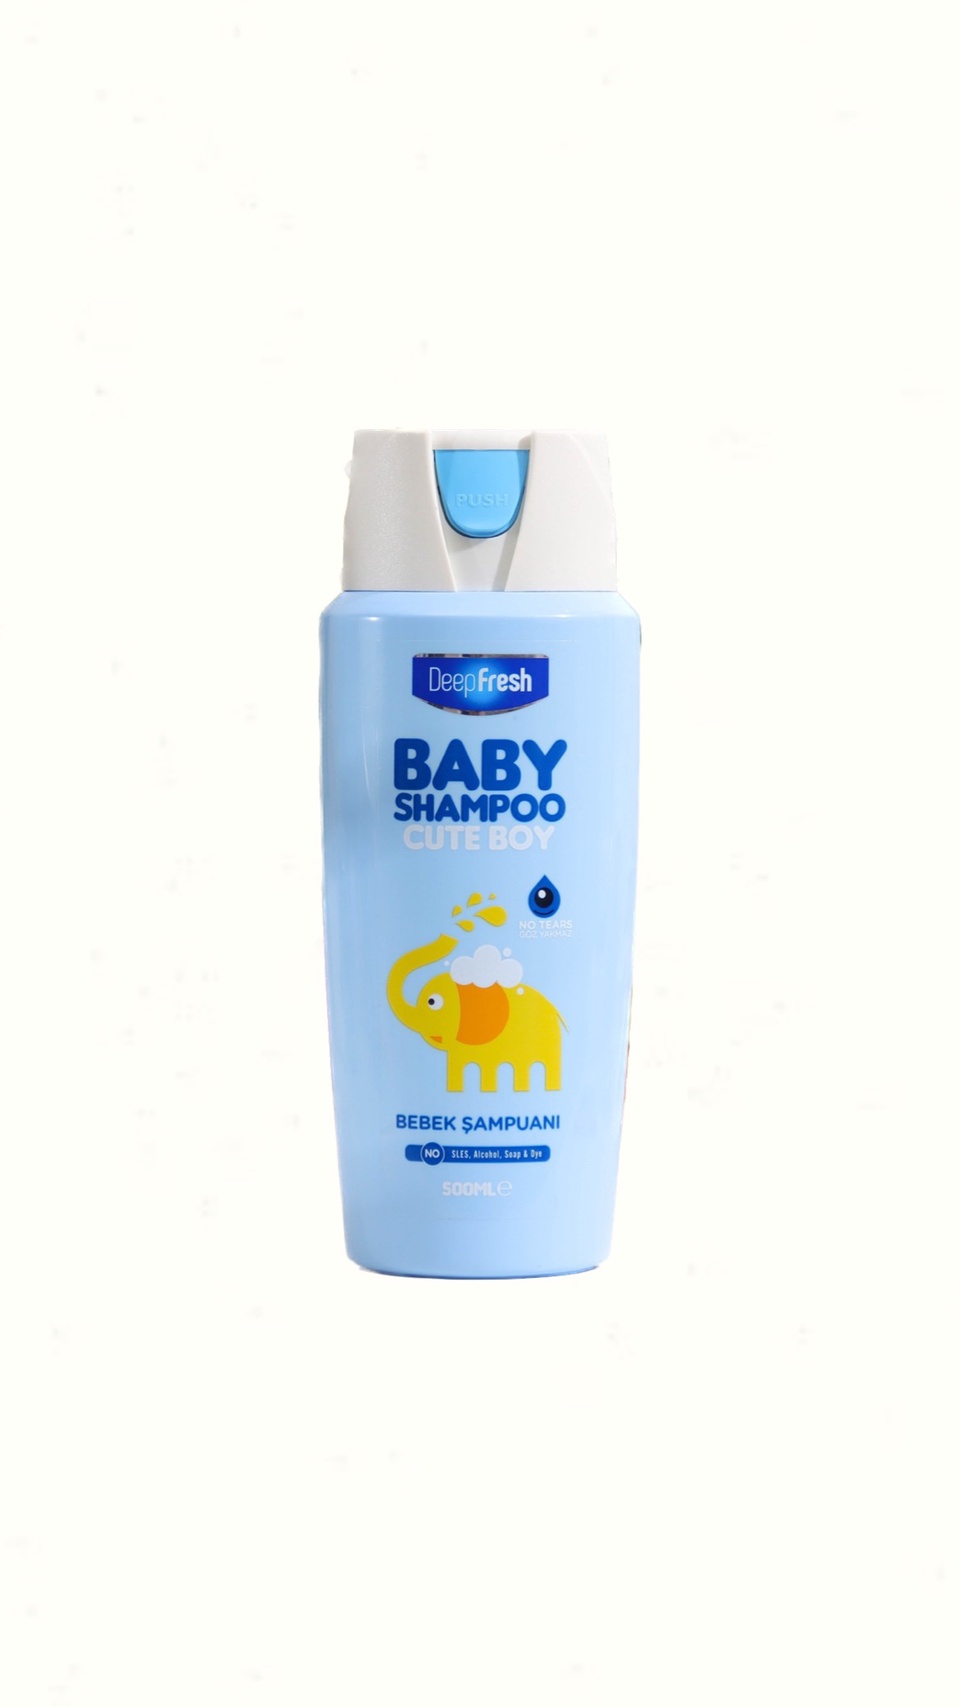 DeepFresh BABY Shampoo Детский шампунь для мальчиков - 250 ₽, заказать онлайн.